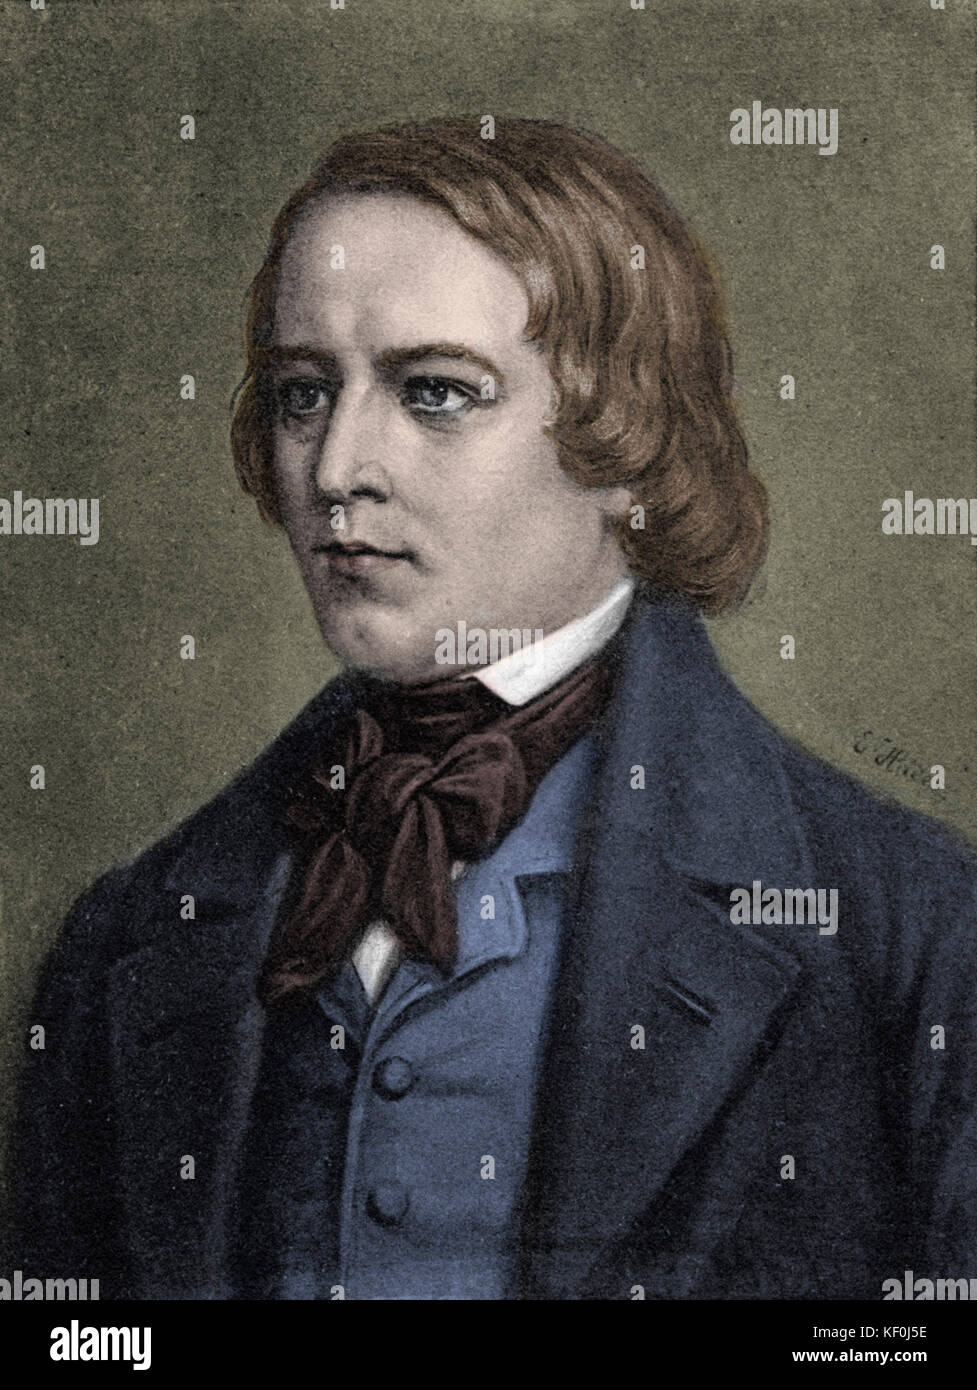 Robert Schumann - portrait. Compositeur allemand, 1810-1856 carte postale. Version colorisée. Banque D'Images